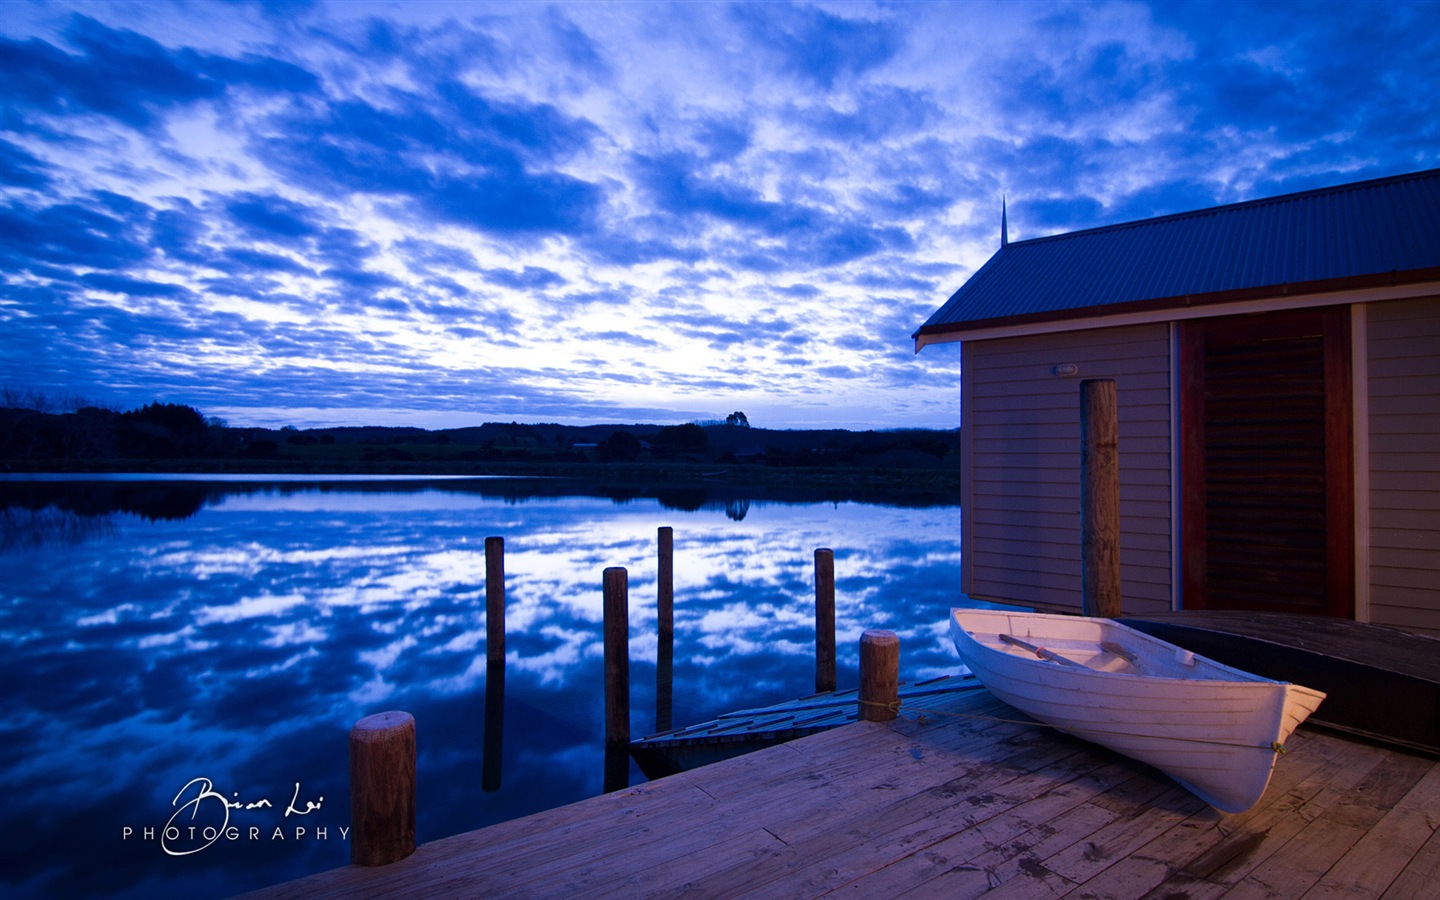 Nouvelle-Zélande Île du Nord de beaux paysages, Windows 8 fonds d'écran thématiques #1 - 1440x900